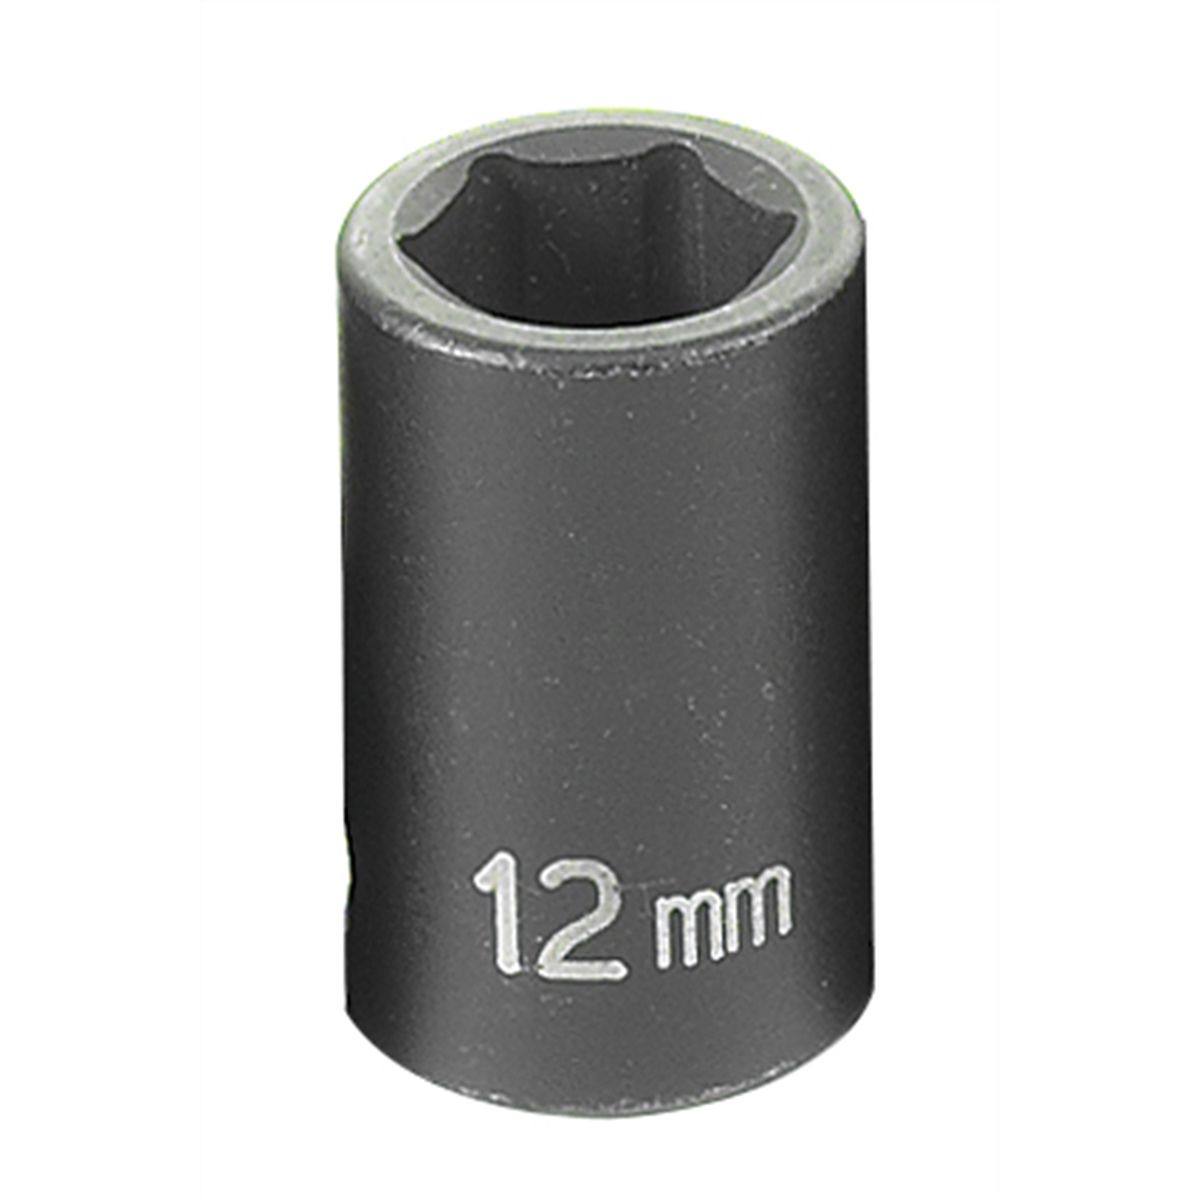 3/8" Drive x 12mm Standard Imapct Socket